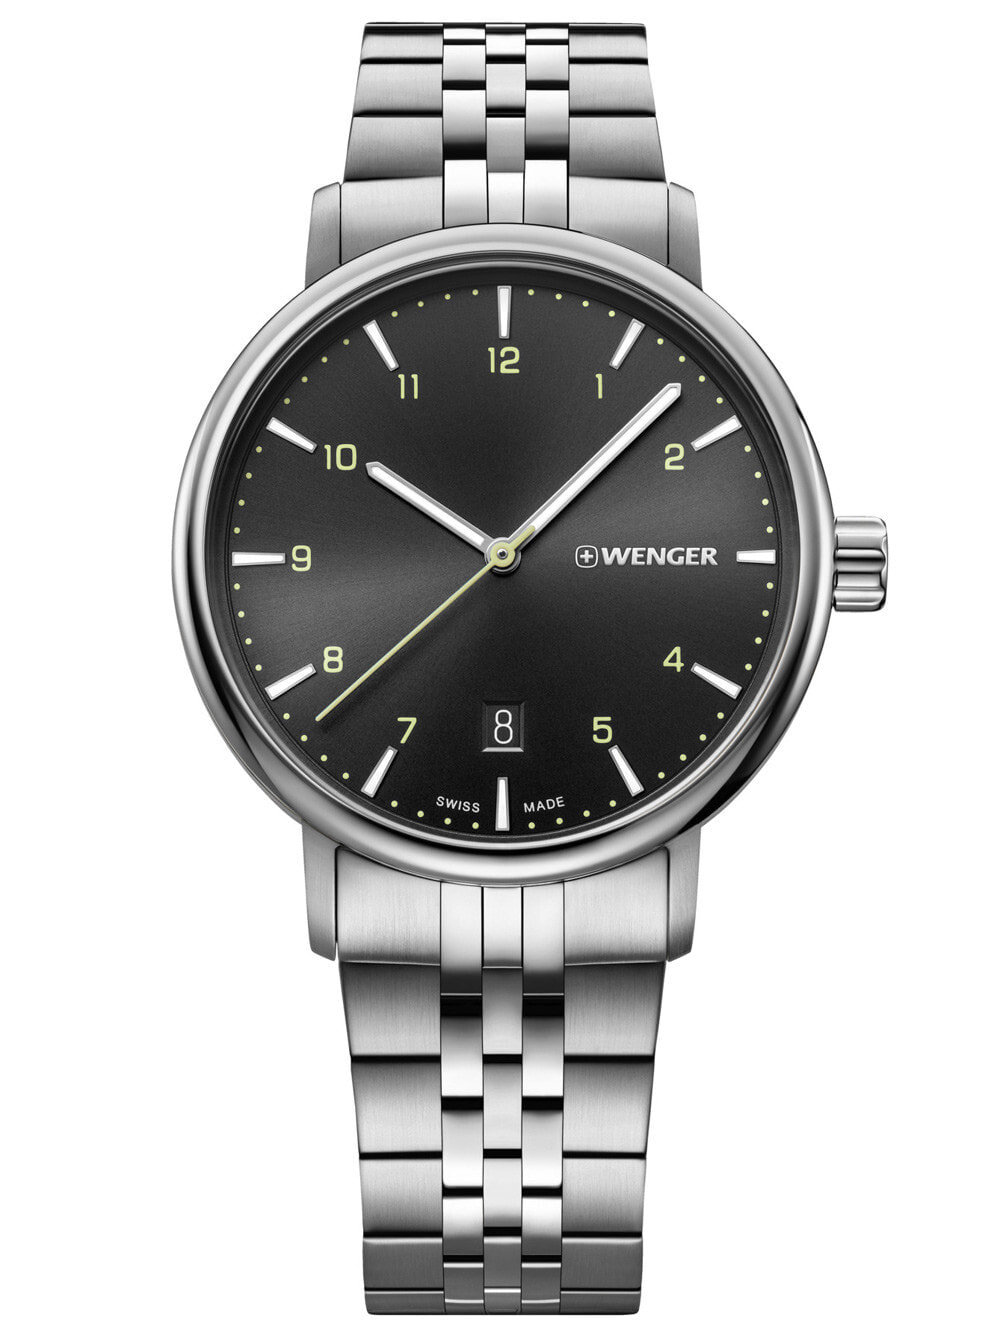 Мужские наручные часы с серебряным браслетом Wenger 01.1731.120 Metropolitan mens 40mm 10ATM